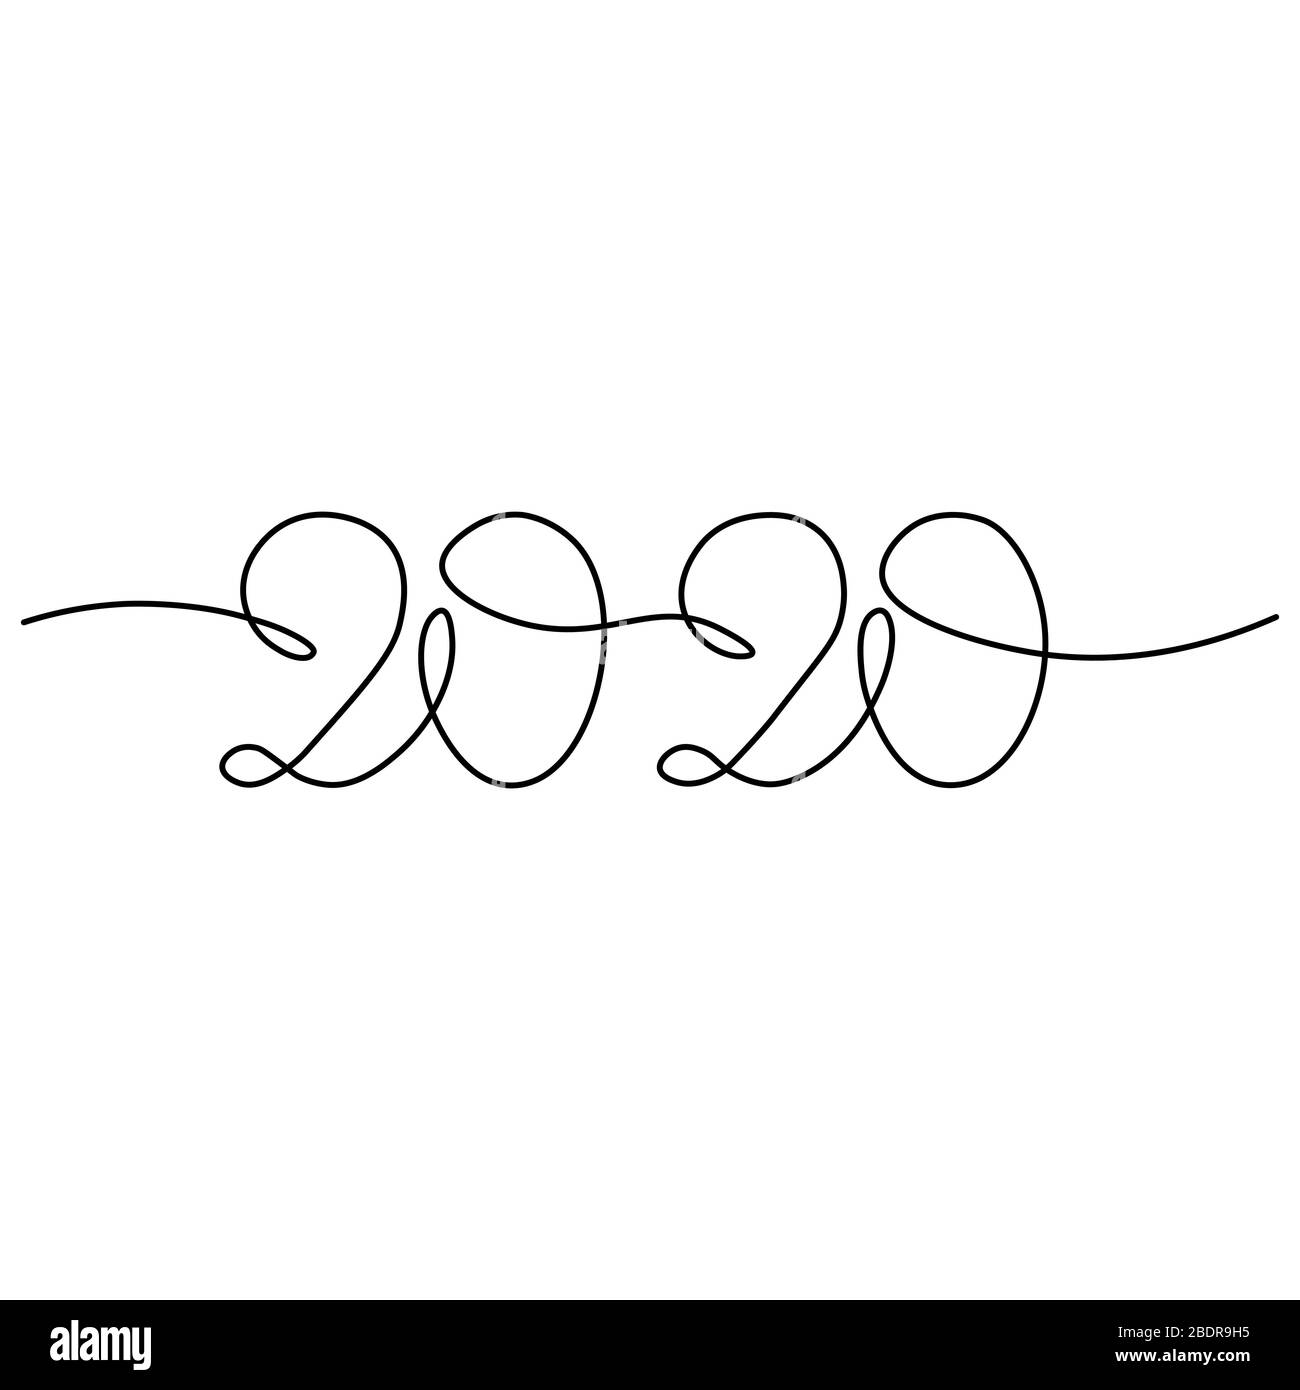 Eine durchgehende Linienzeichnung 2020. Vector Neujahrillustration isoliert auf weißem Hintergrund. Stock Vektor